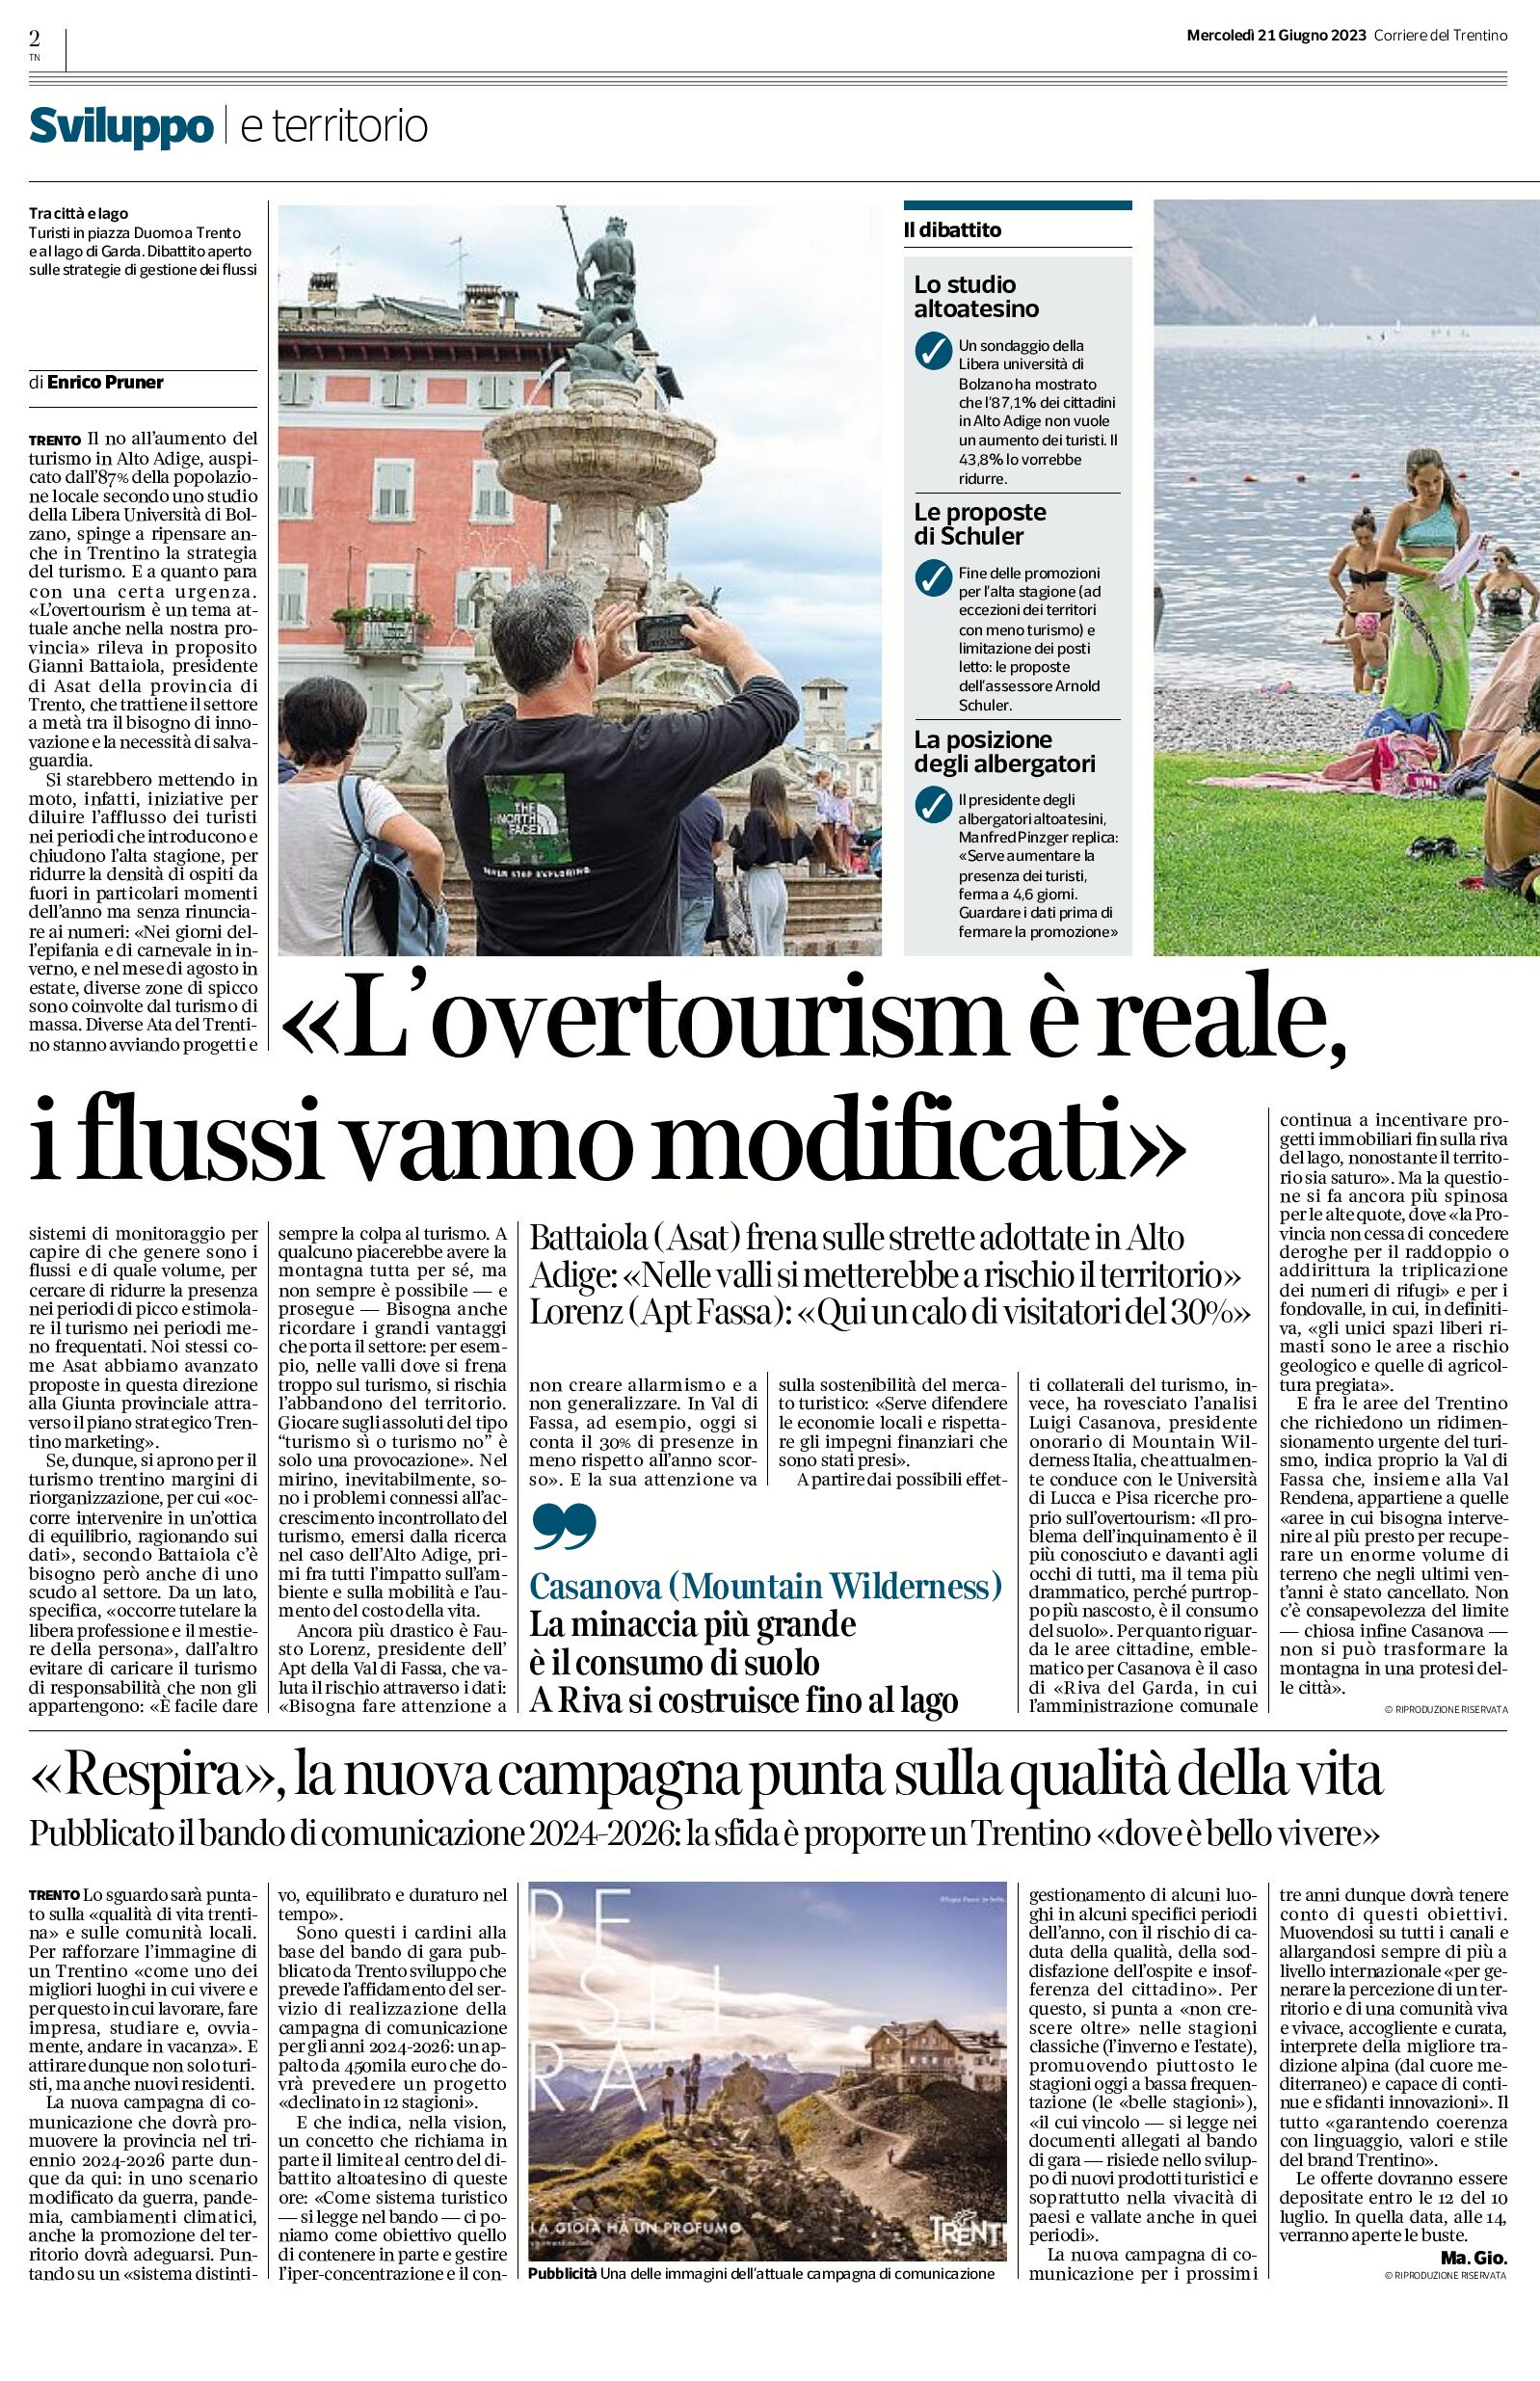 Trentino: l’overtourism è reale, i flussi vanno modificati